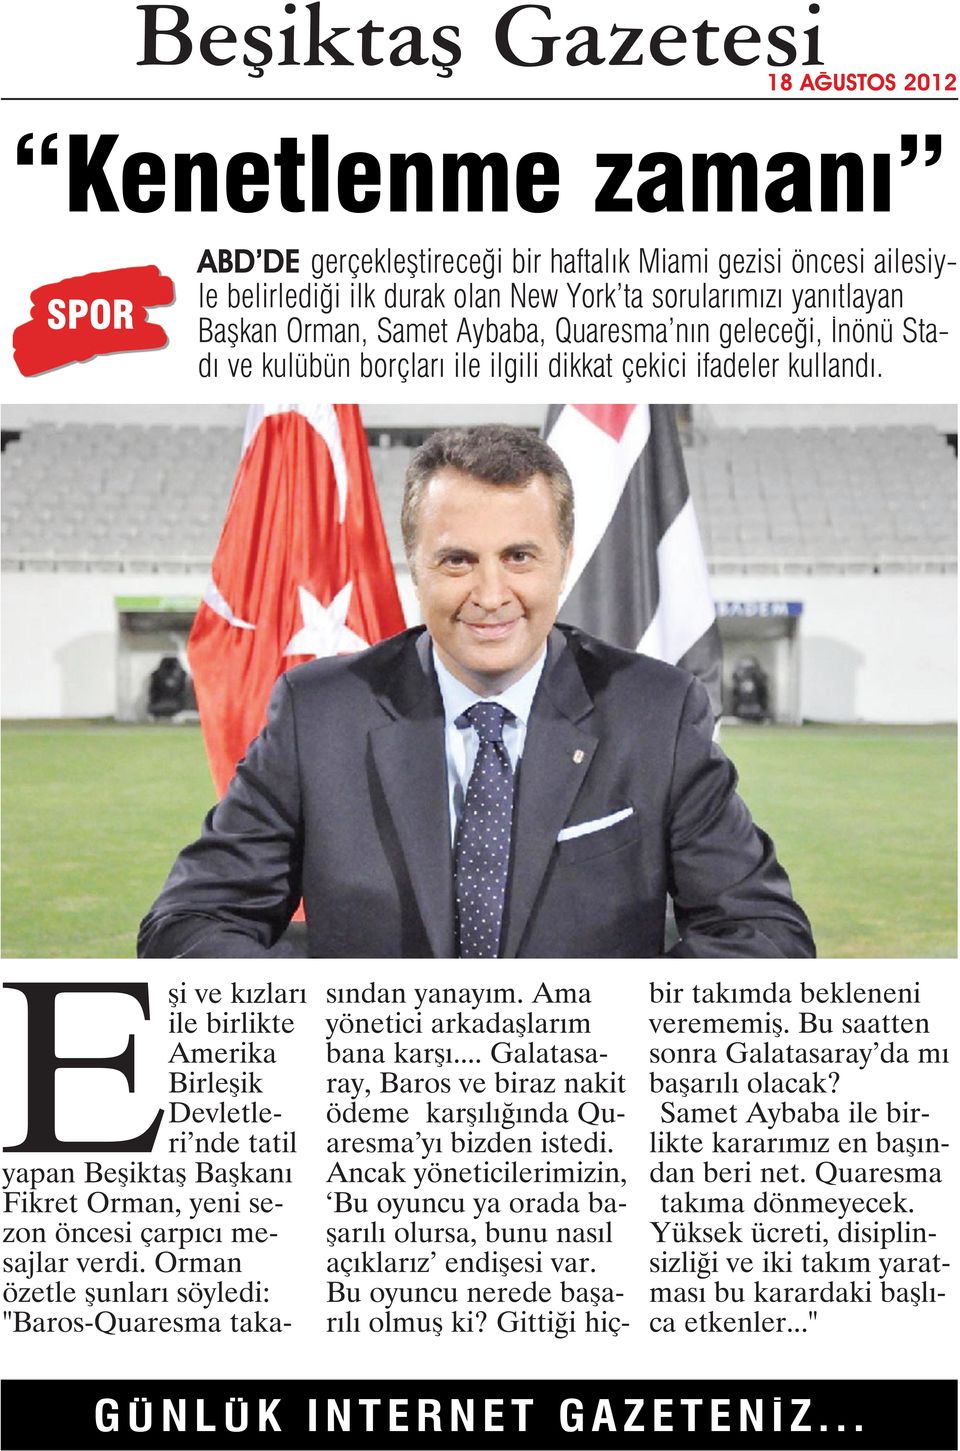 Eşi ve kızları ile birlikte Amerika Birleşik Devletleri nde tatil yapan Beşiktaş Başkanı Fikret Orman, yeni sezon öncesi çarpıcı mesajlar verdi.